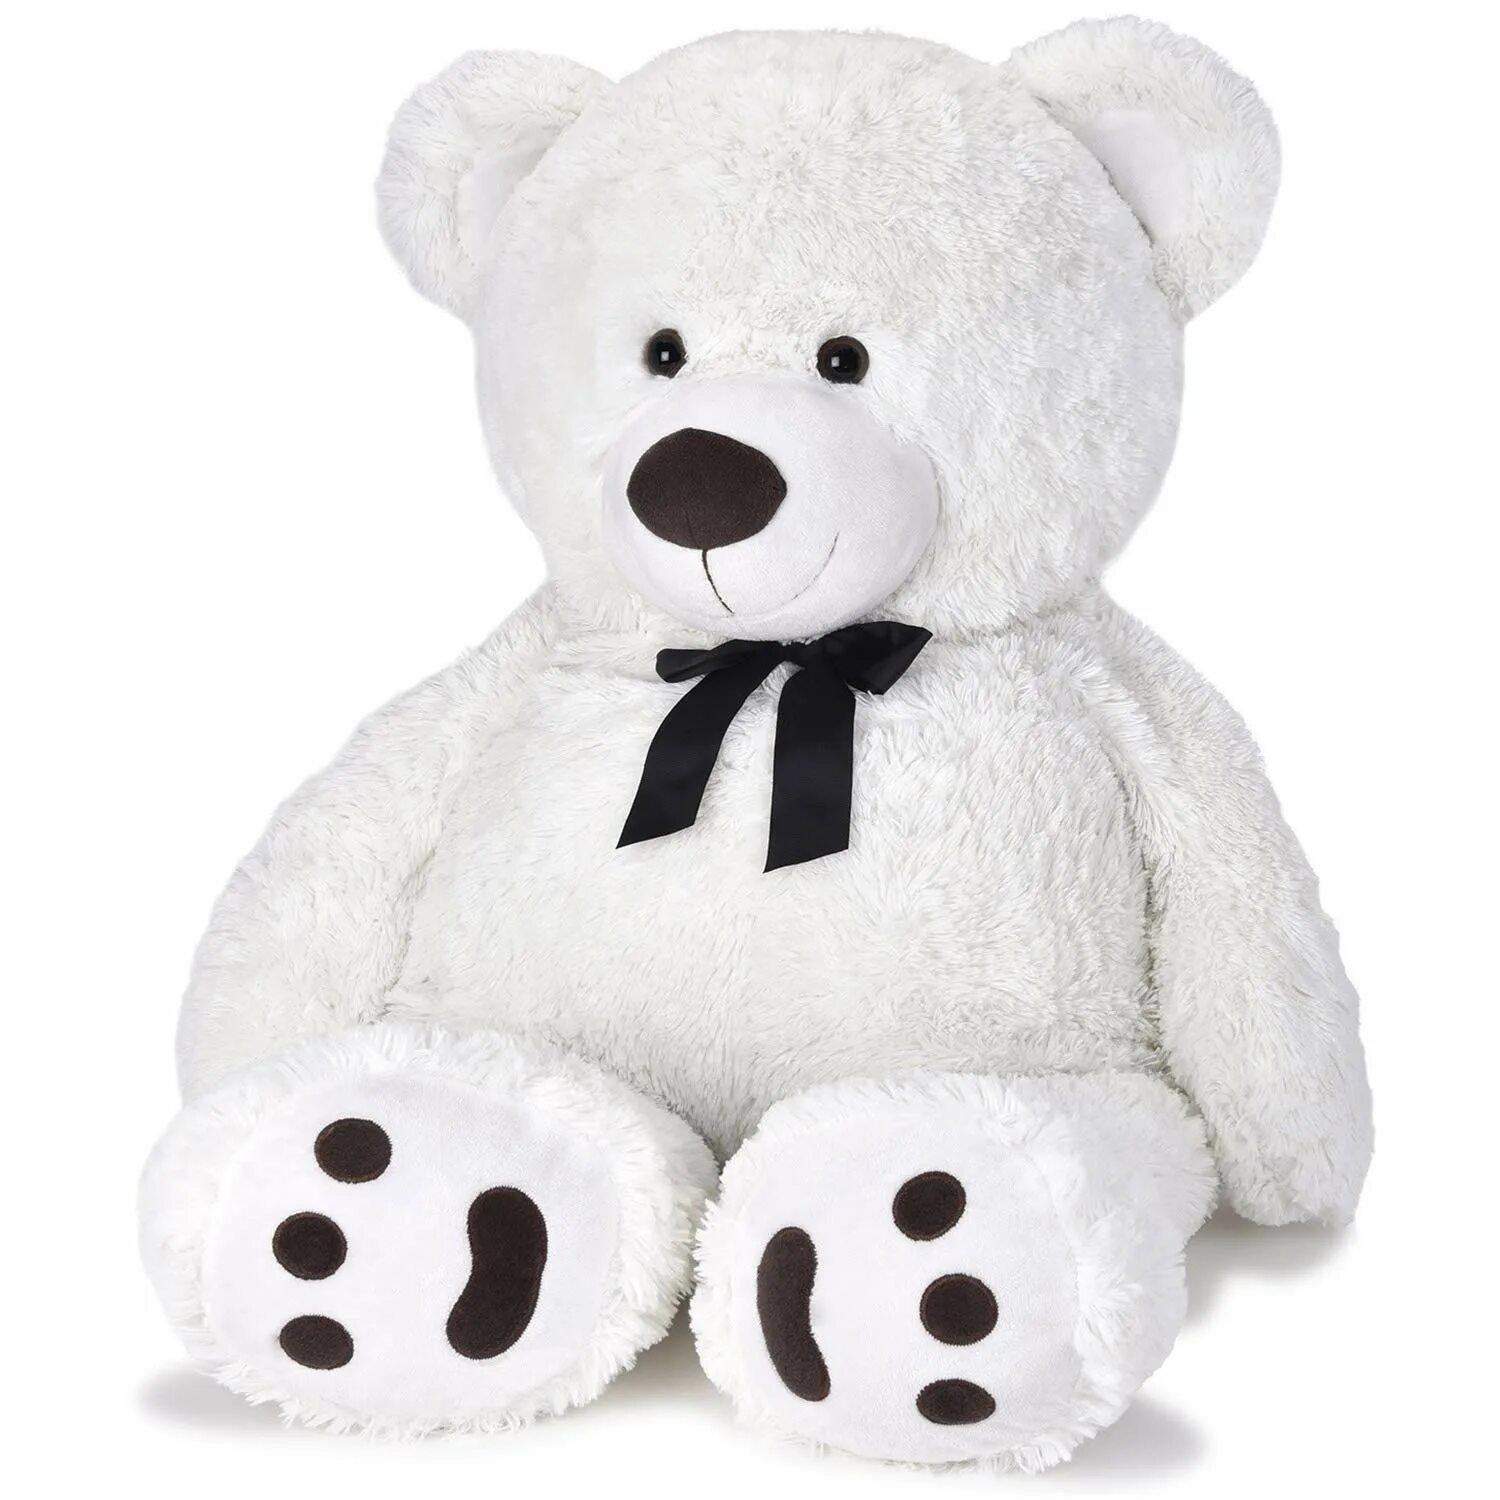 Тедди белый. Белый медведь Тедди. Плюшевый мишка Тедди белый. Игрушка сидячий белый медведь. Плюшевый мишка белый.